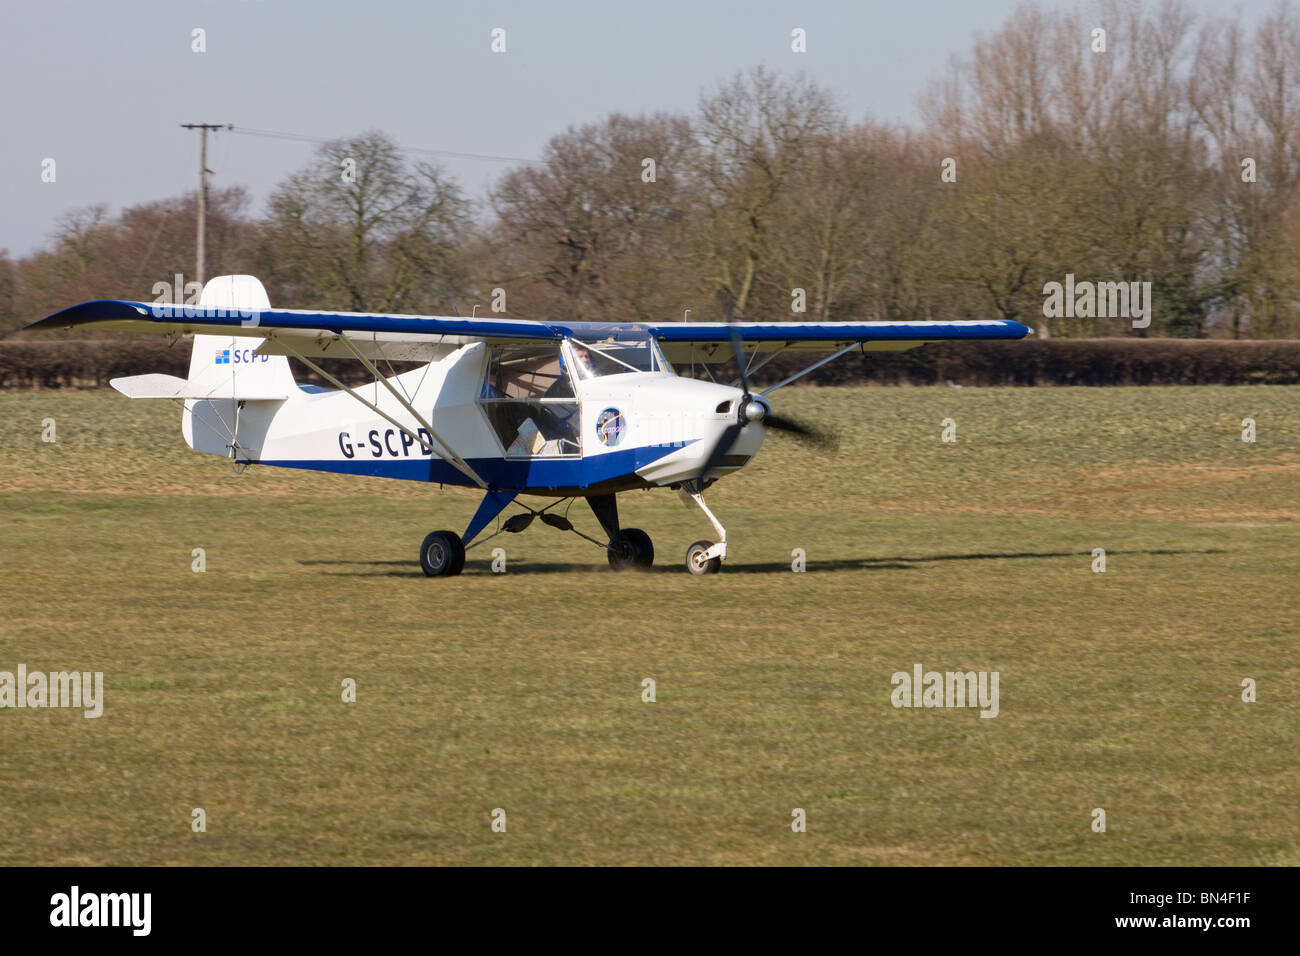 Escapade 912 (1) G-SCPD landing at Breighton Airfield Stock Photo